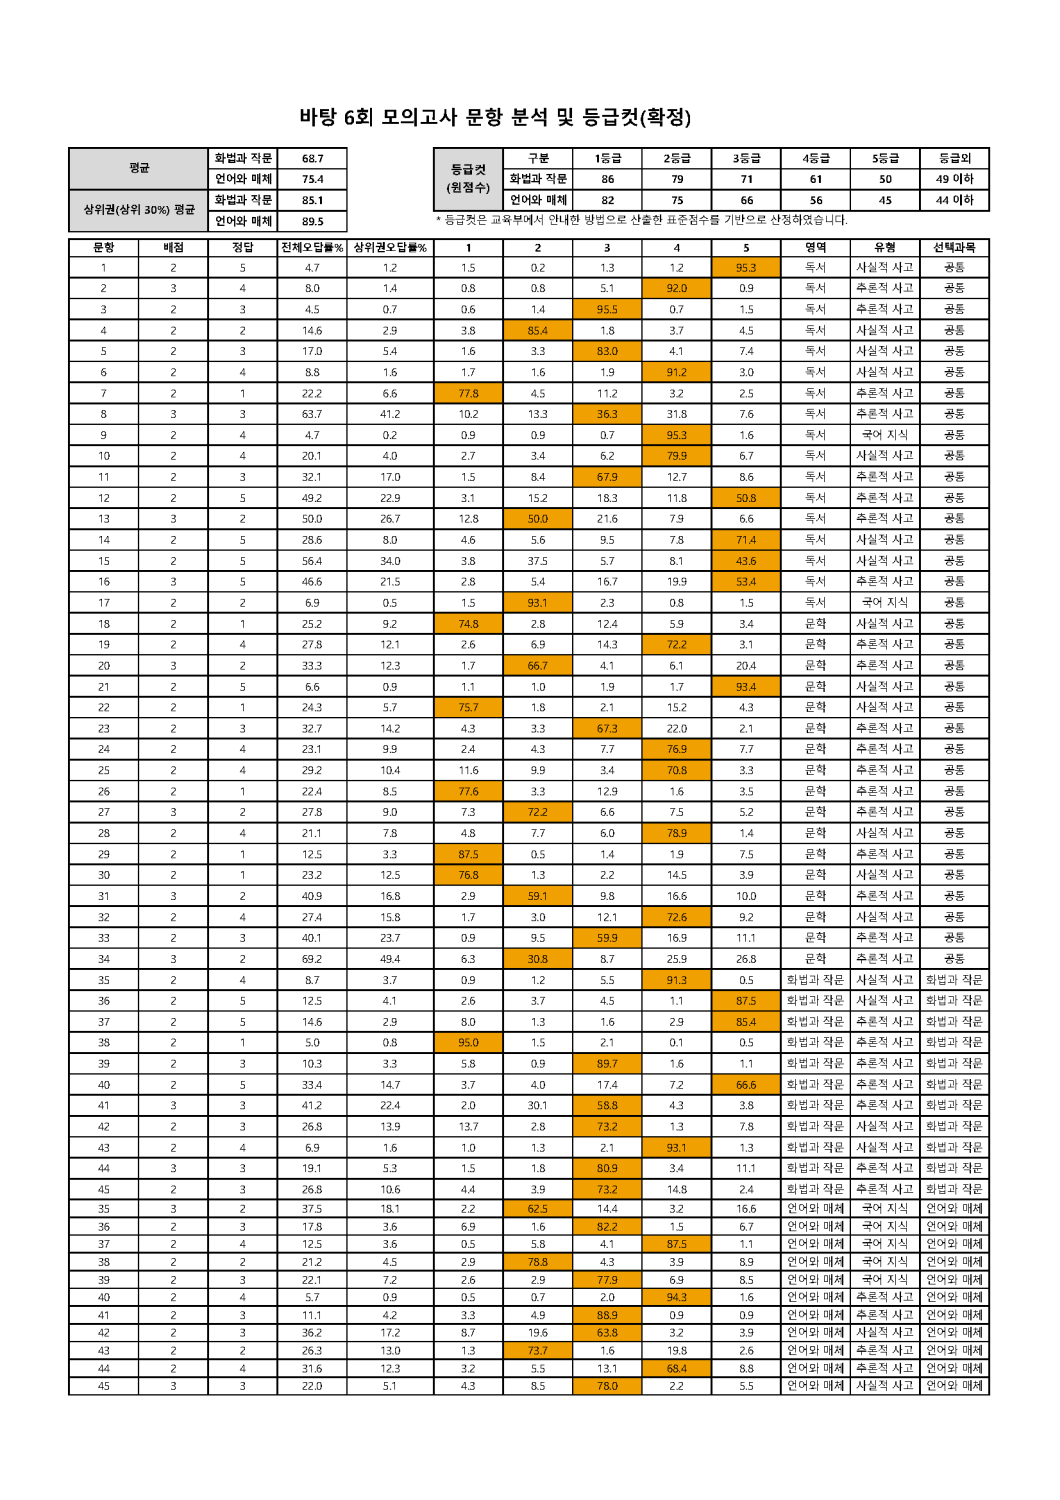 2022학년도 바탕 문항분석표 및 등급컷(1회~10회)_페이지_06.png